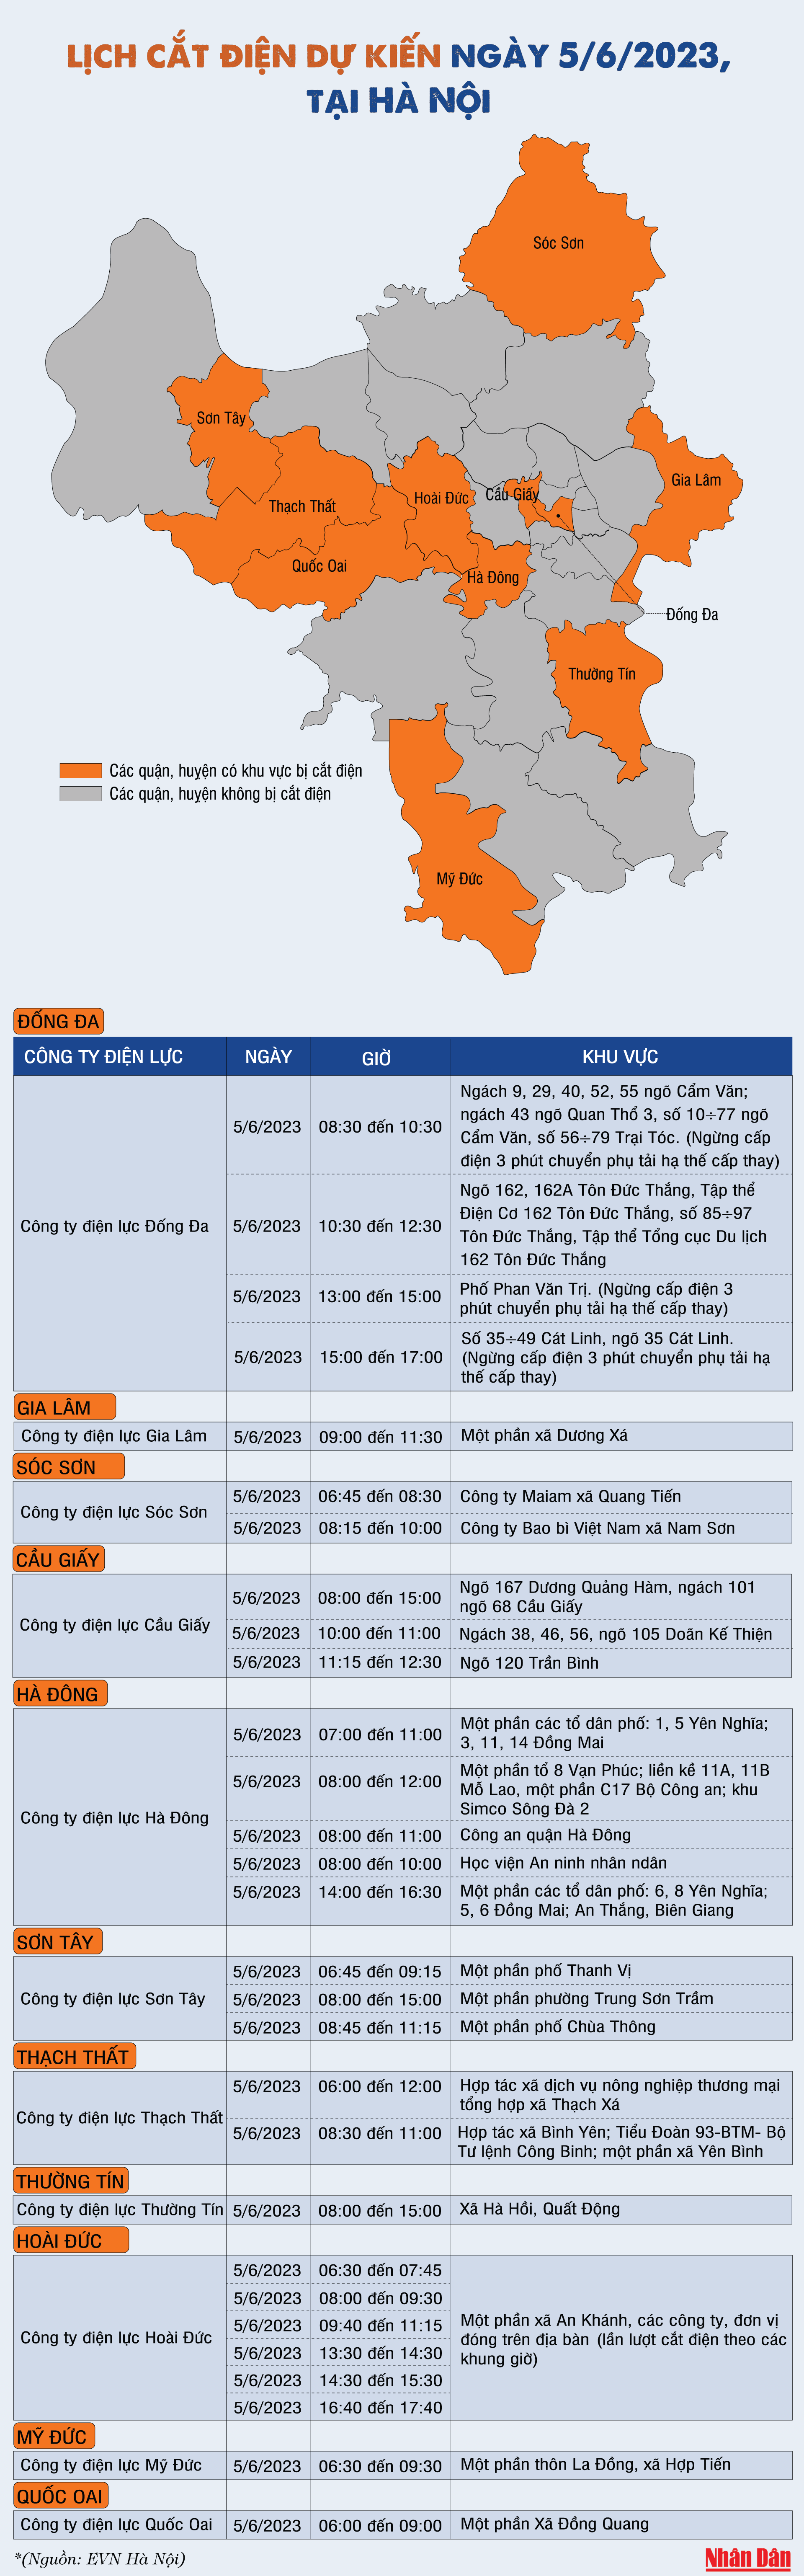 Lịch cắt điện dự kiến ngày 5/6/2023 tại Hà Nội - Ảnh 1